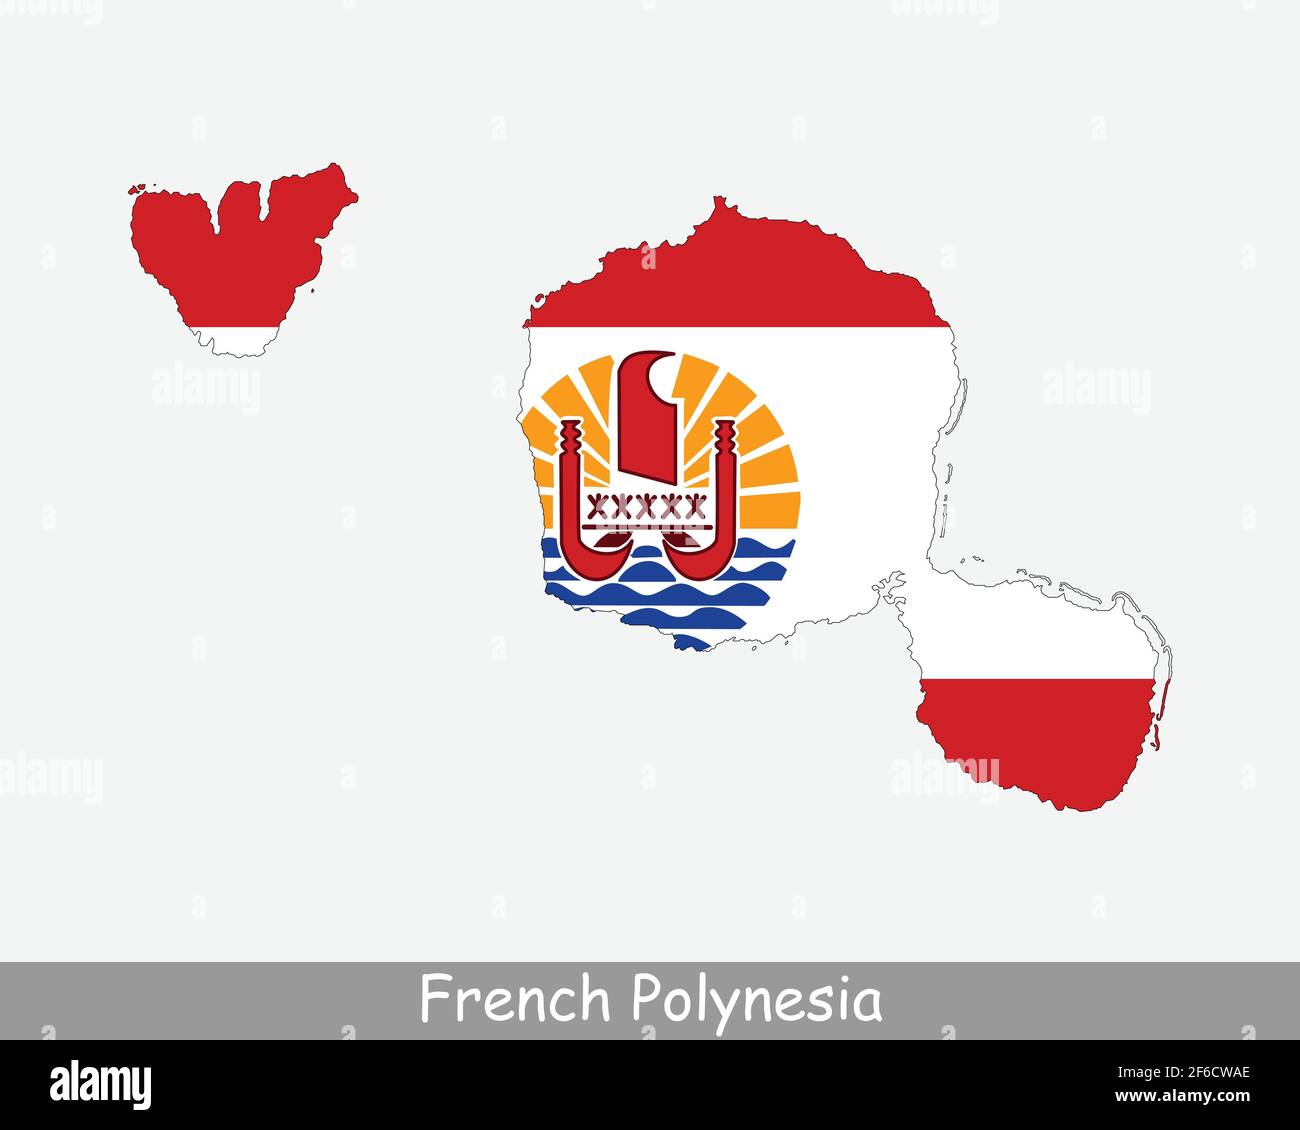 Drapeau cartographique de la Polynésie française. Carte de Polynésie française avec drapeau isolé sur fond blanc. Pays d'outre-mer et collectivité de France. Illustration vectorielle Illustration de Vecteur